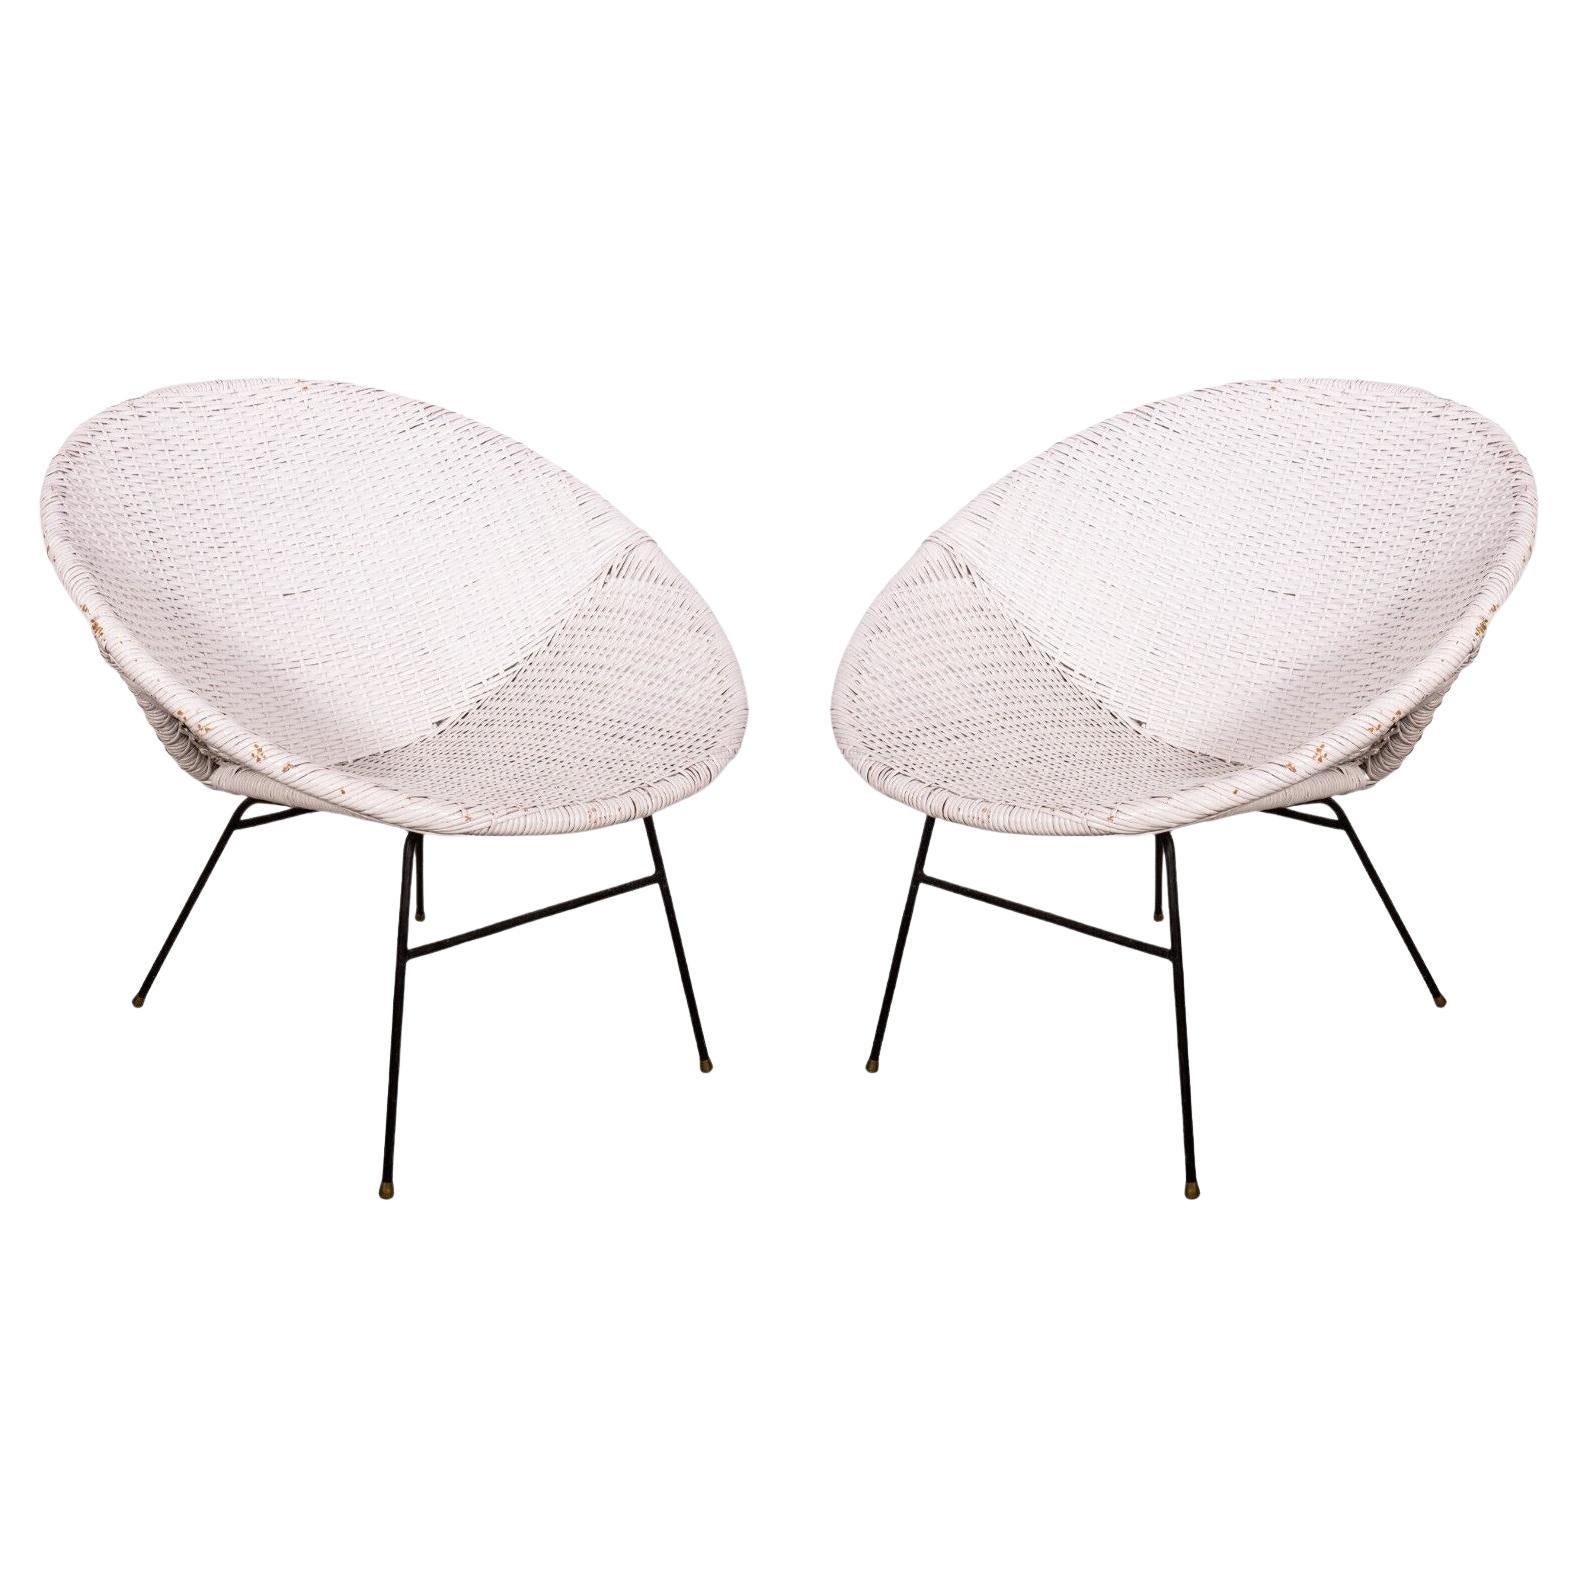 Paire de chaises en rotin Scoop blanches de style moderne du milieu du siècle dernier